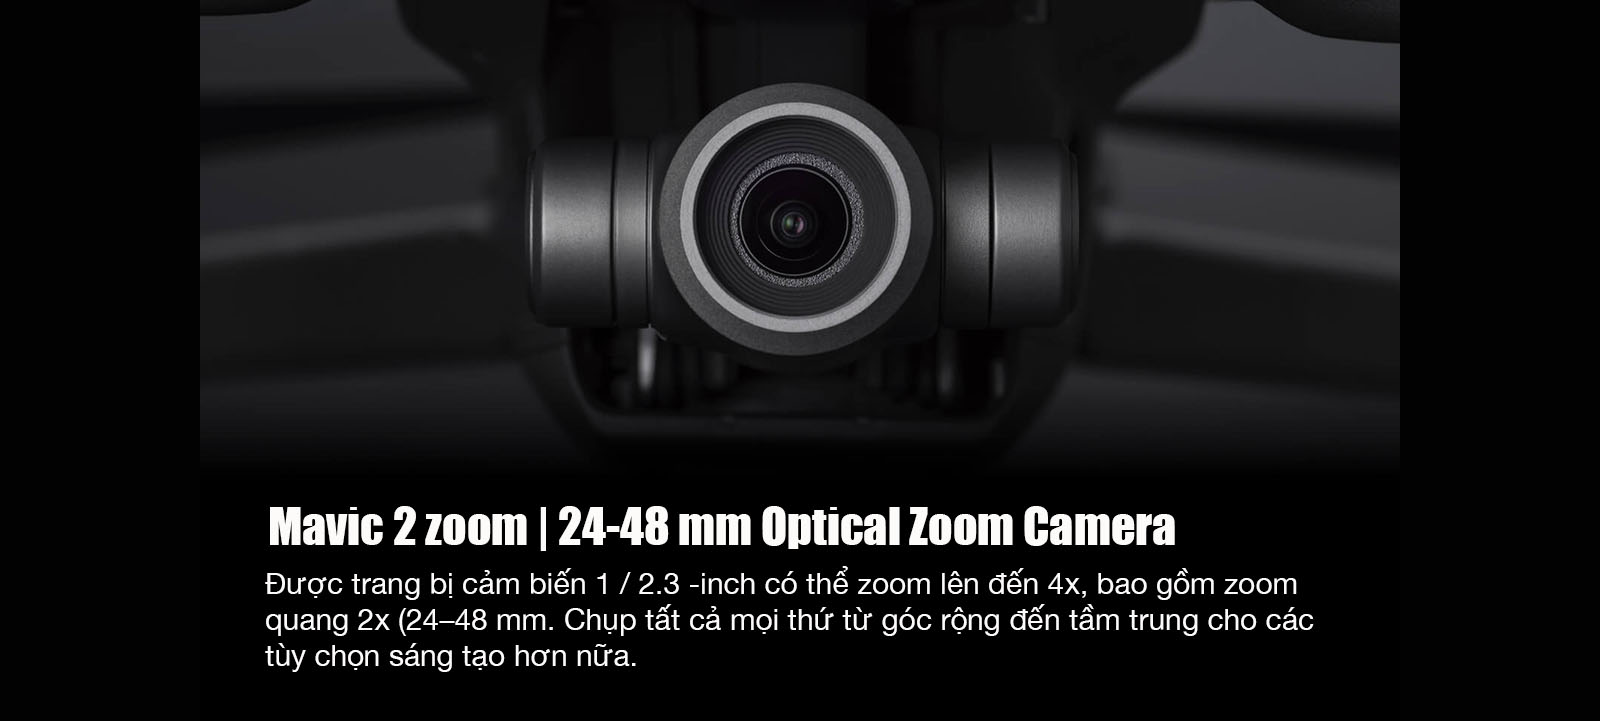 camera mavic 2 zoom